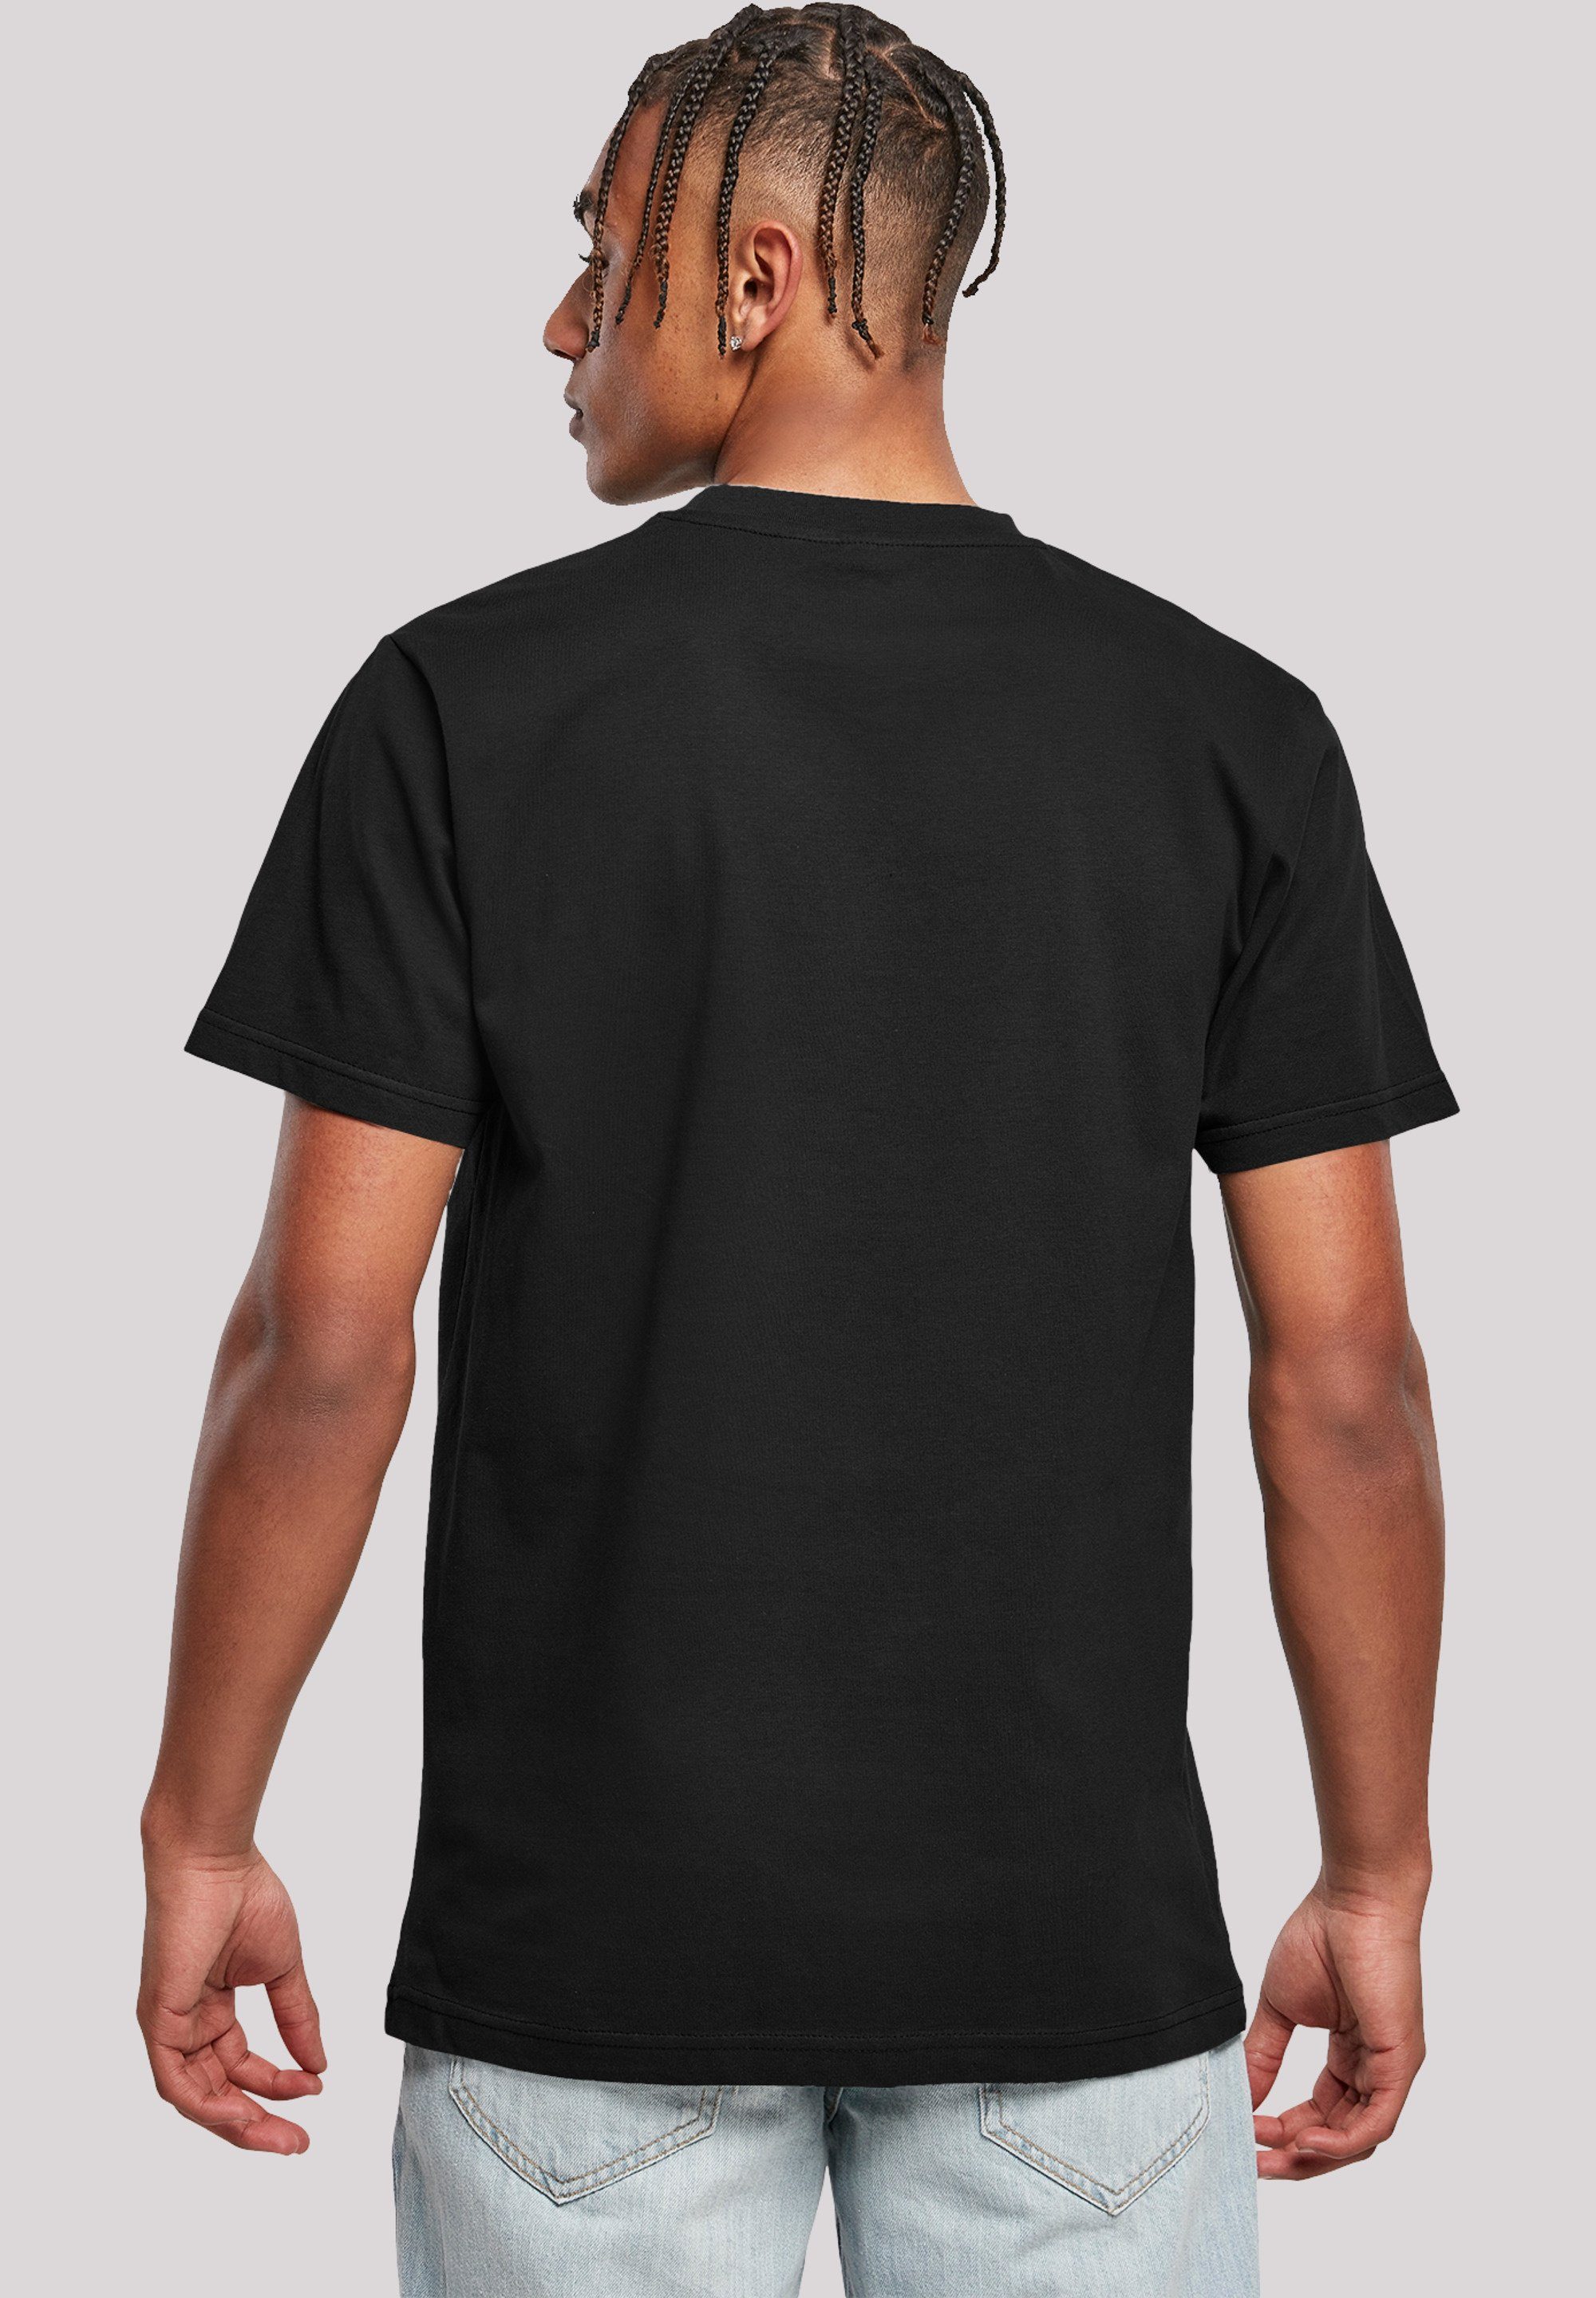 F4NT4STIC T-Shirt Tom und Jerry schwarz Merch,Regular-Fit,Basic,Bedruckt Prank Rocket Herren,Premium